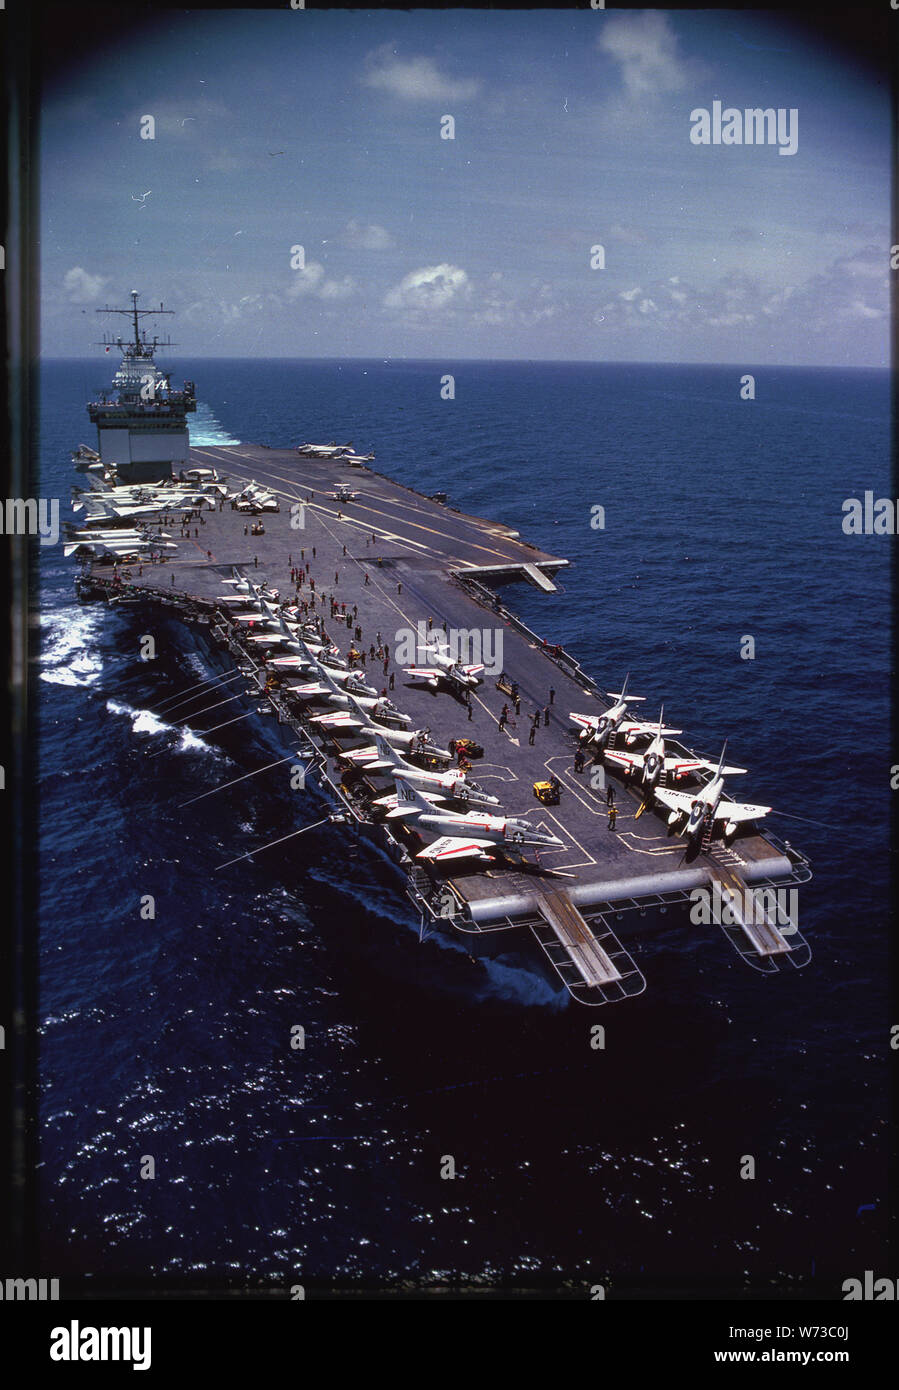 La nuclear powered portaerei USS Enterprise (CVAN-65) le crociere nelle limpide acque blu del Golfo del Tonchino lungo le coste del Vietnam. Con A-4 Skyhawk bombardieri sul suo bow, enterprise è pronto a recuperare più aerei sul suo ponte angolato. Foto Stock